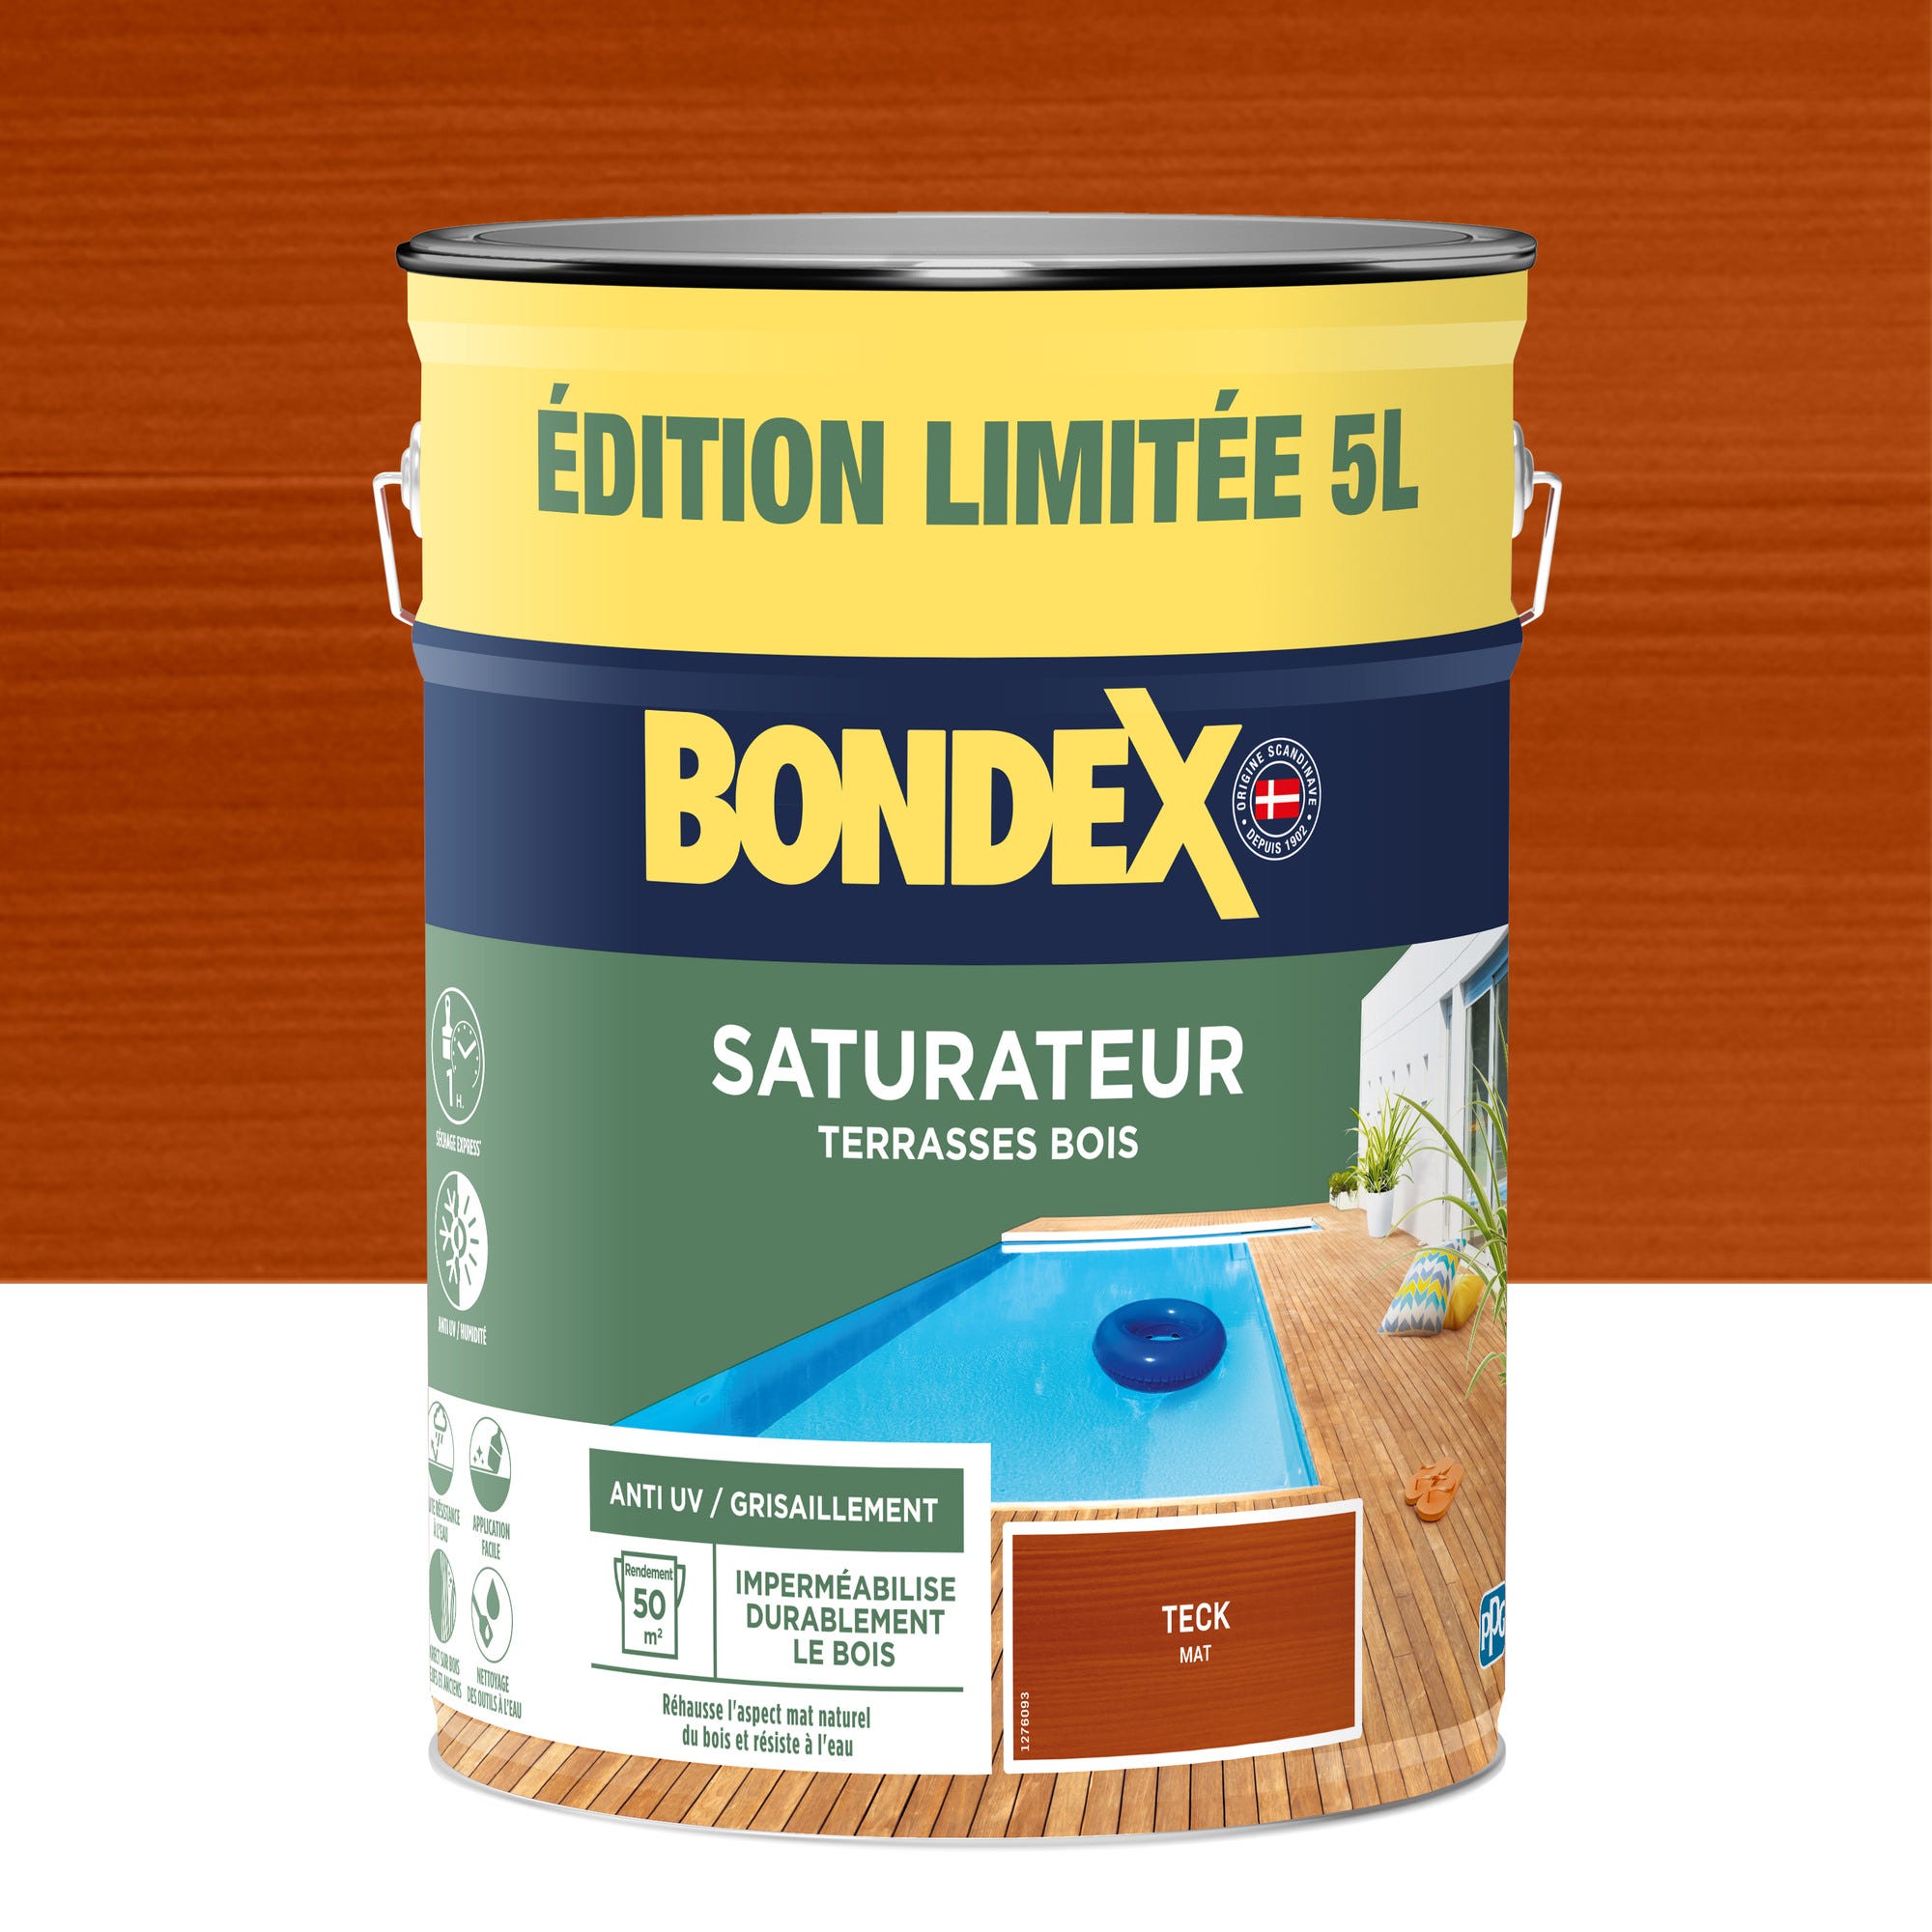 Saturateur terrasse bois teck 5 L Edition limitée - BONDEX 0